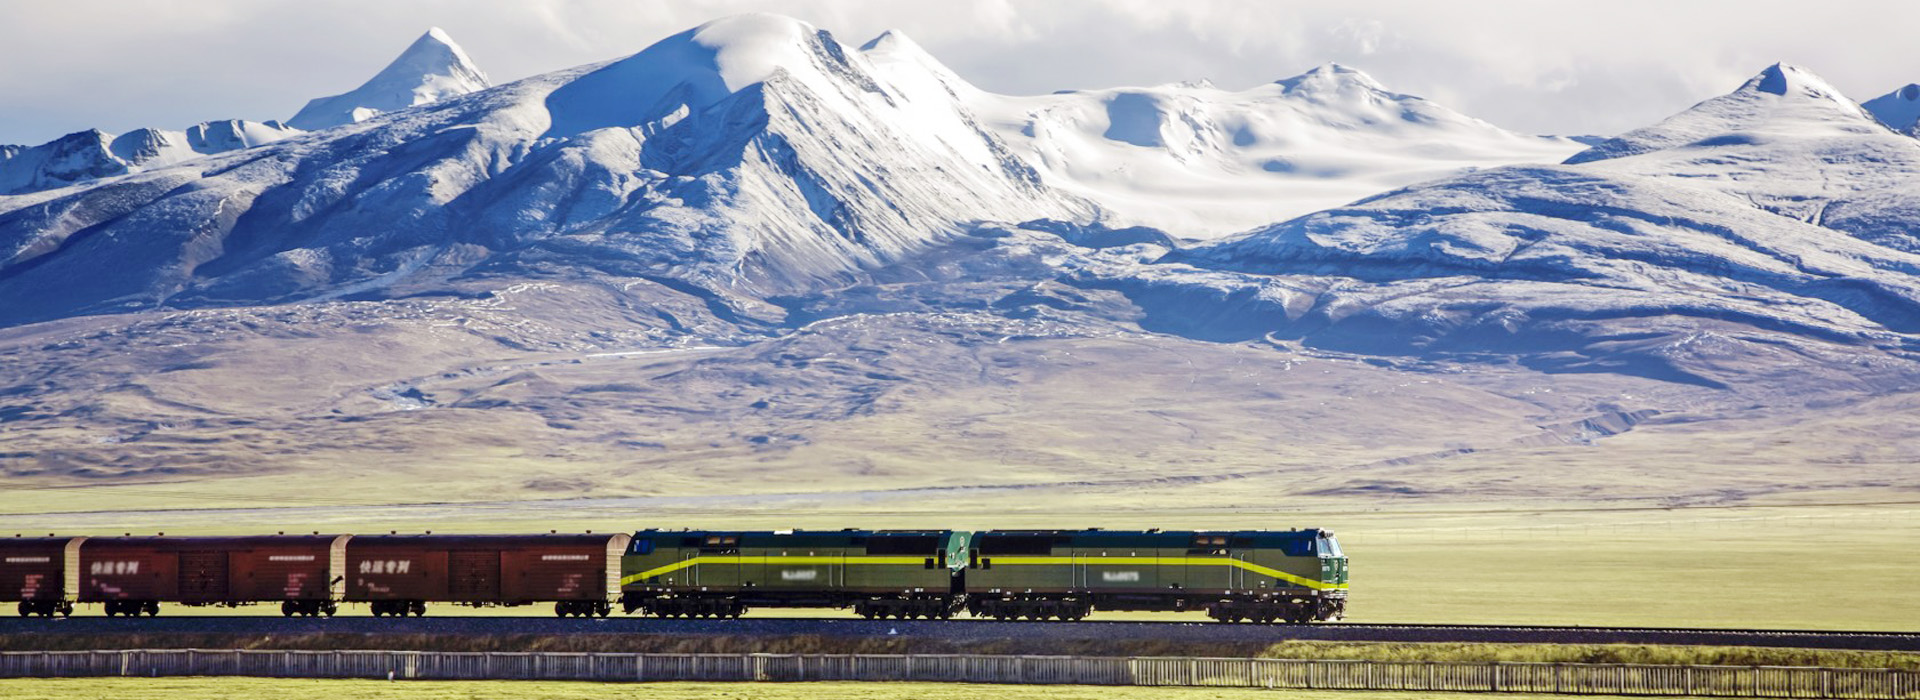 Tibet Train Tour